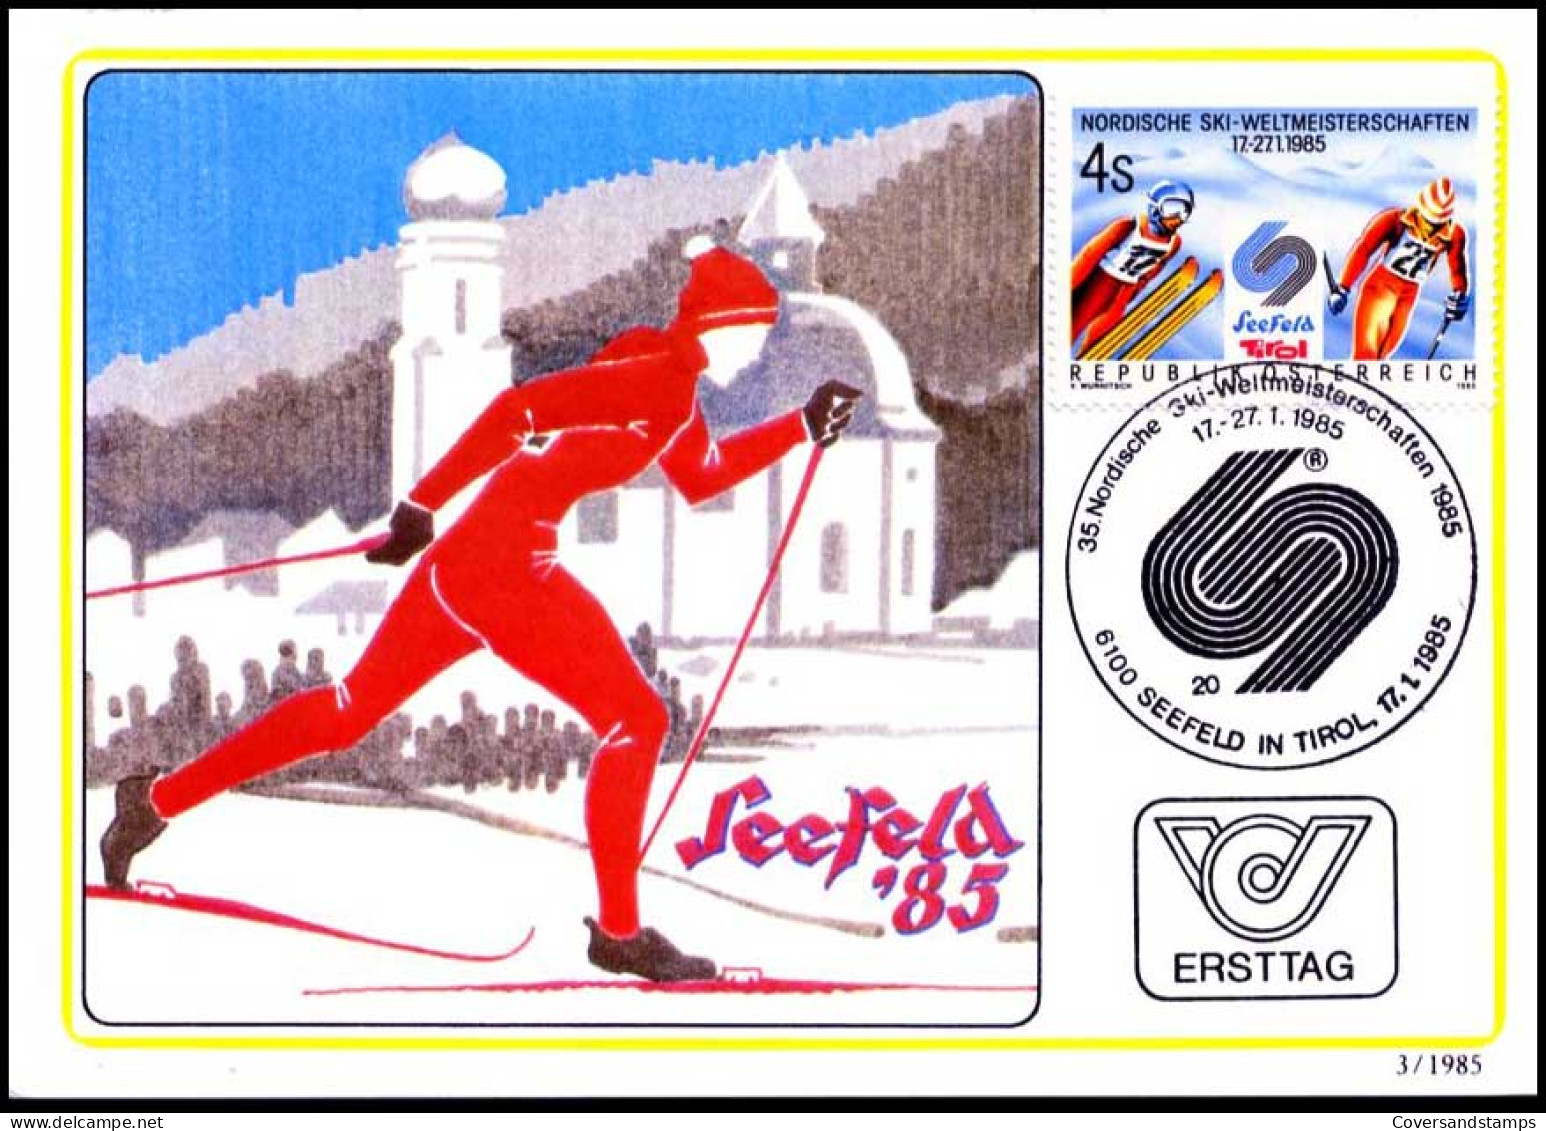 Oostenrijk - MK - Nordische Ski-weltmeisterschaften                                           - Maximum Cards